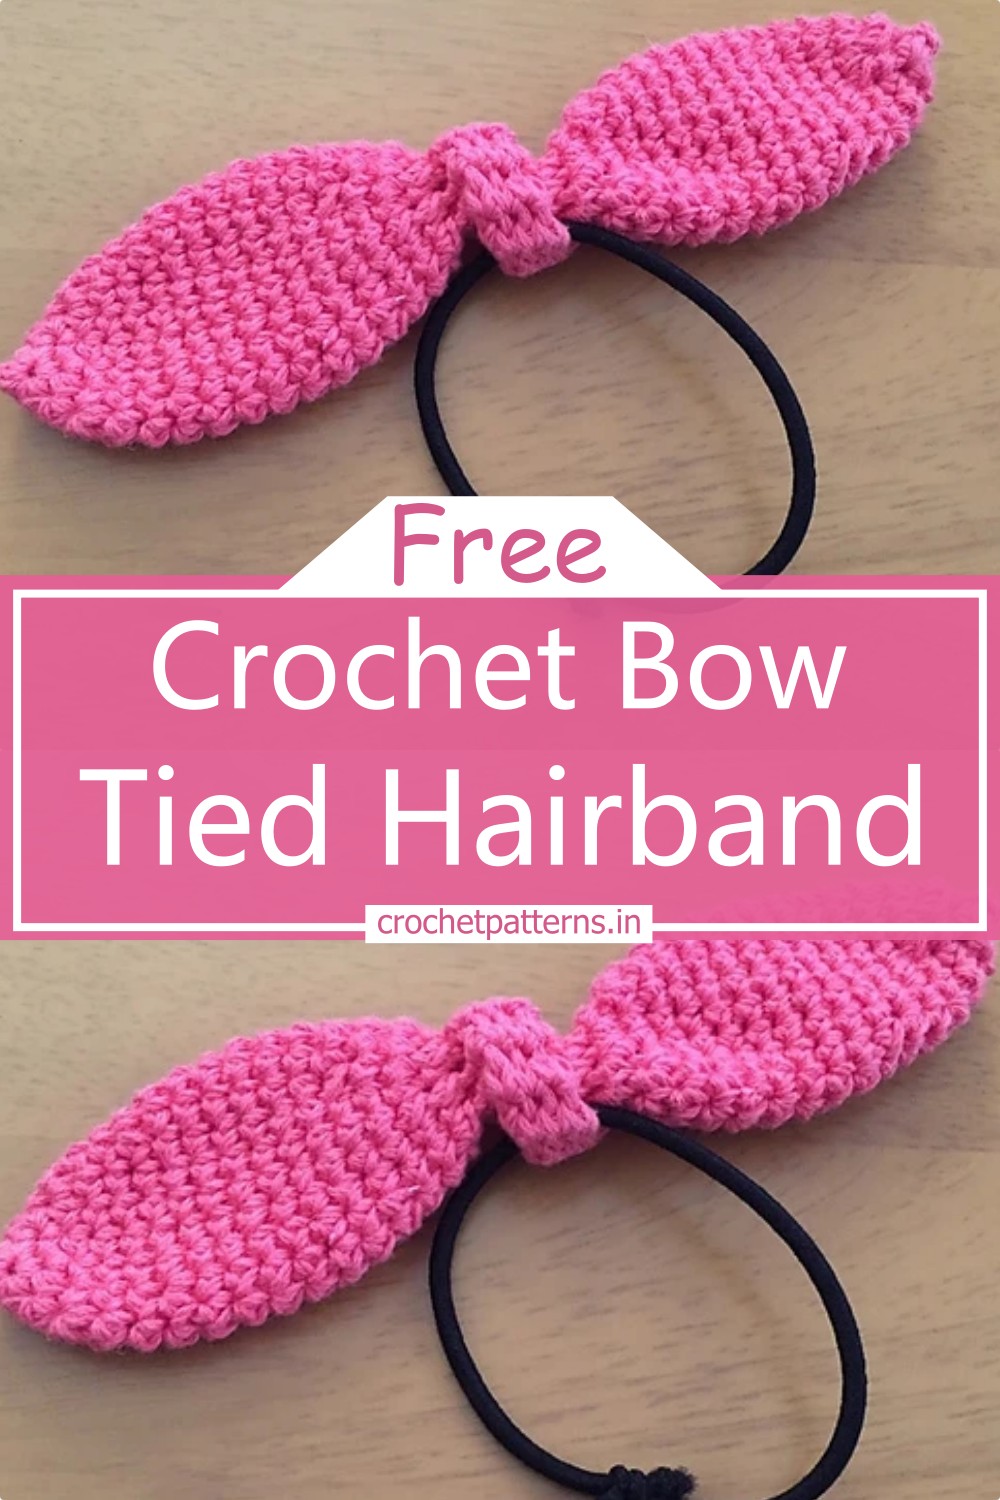 Crochet Bow Tied Hairband